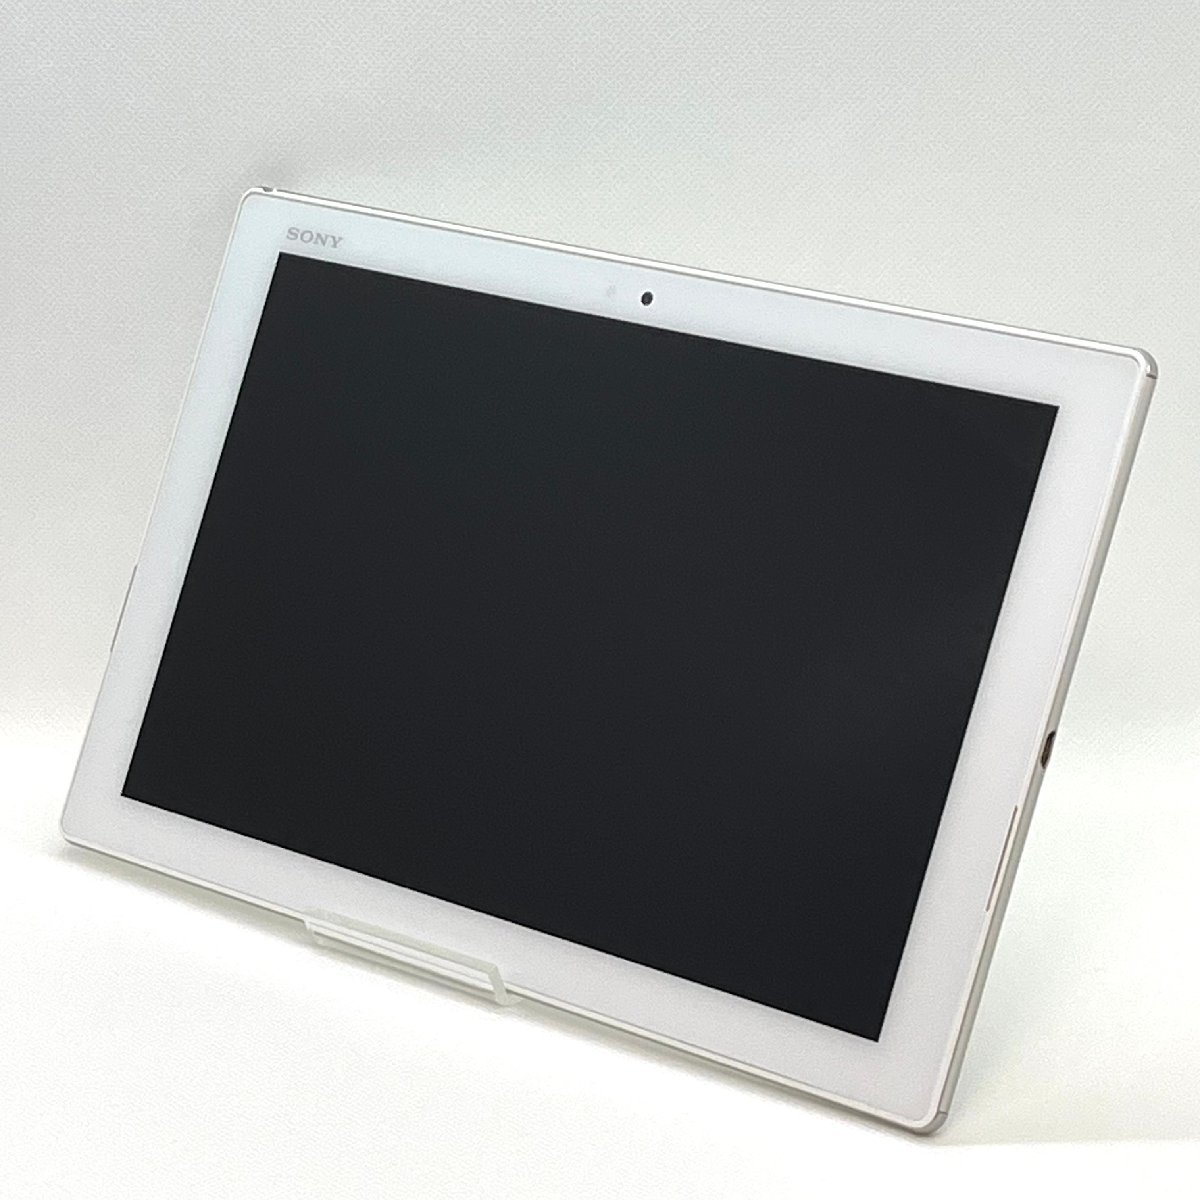 訳あり Xperia Z4 Tablet SOT31 ホワイト au SIMロック解除済み バージョン7.0 白ロム タブレット本体 送料無料 T50_画像2